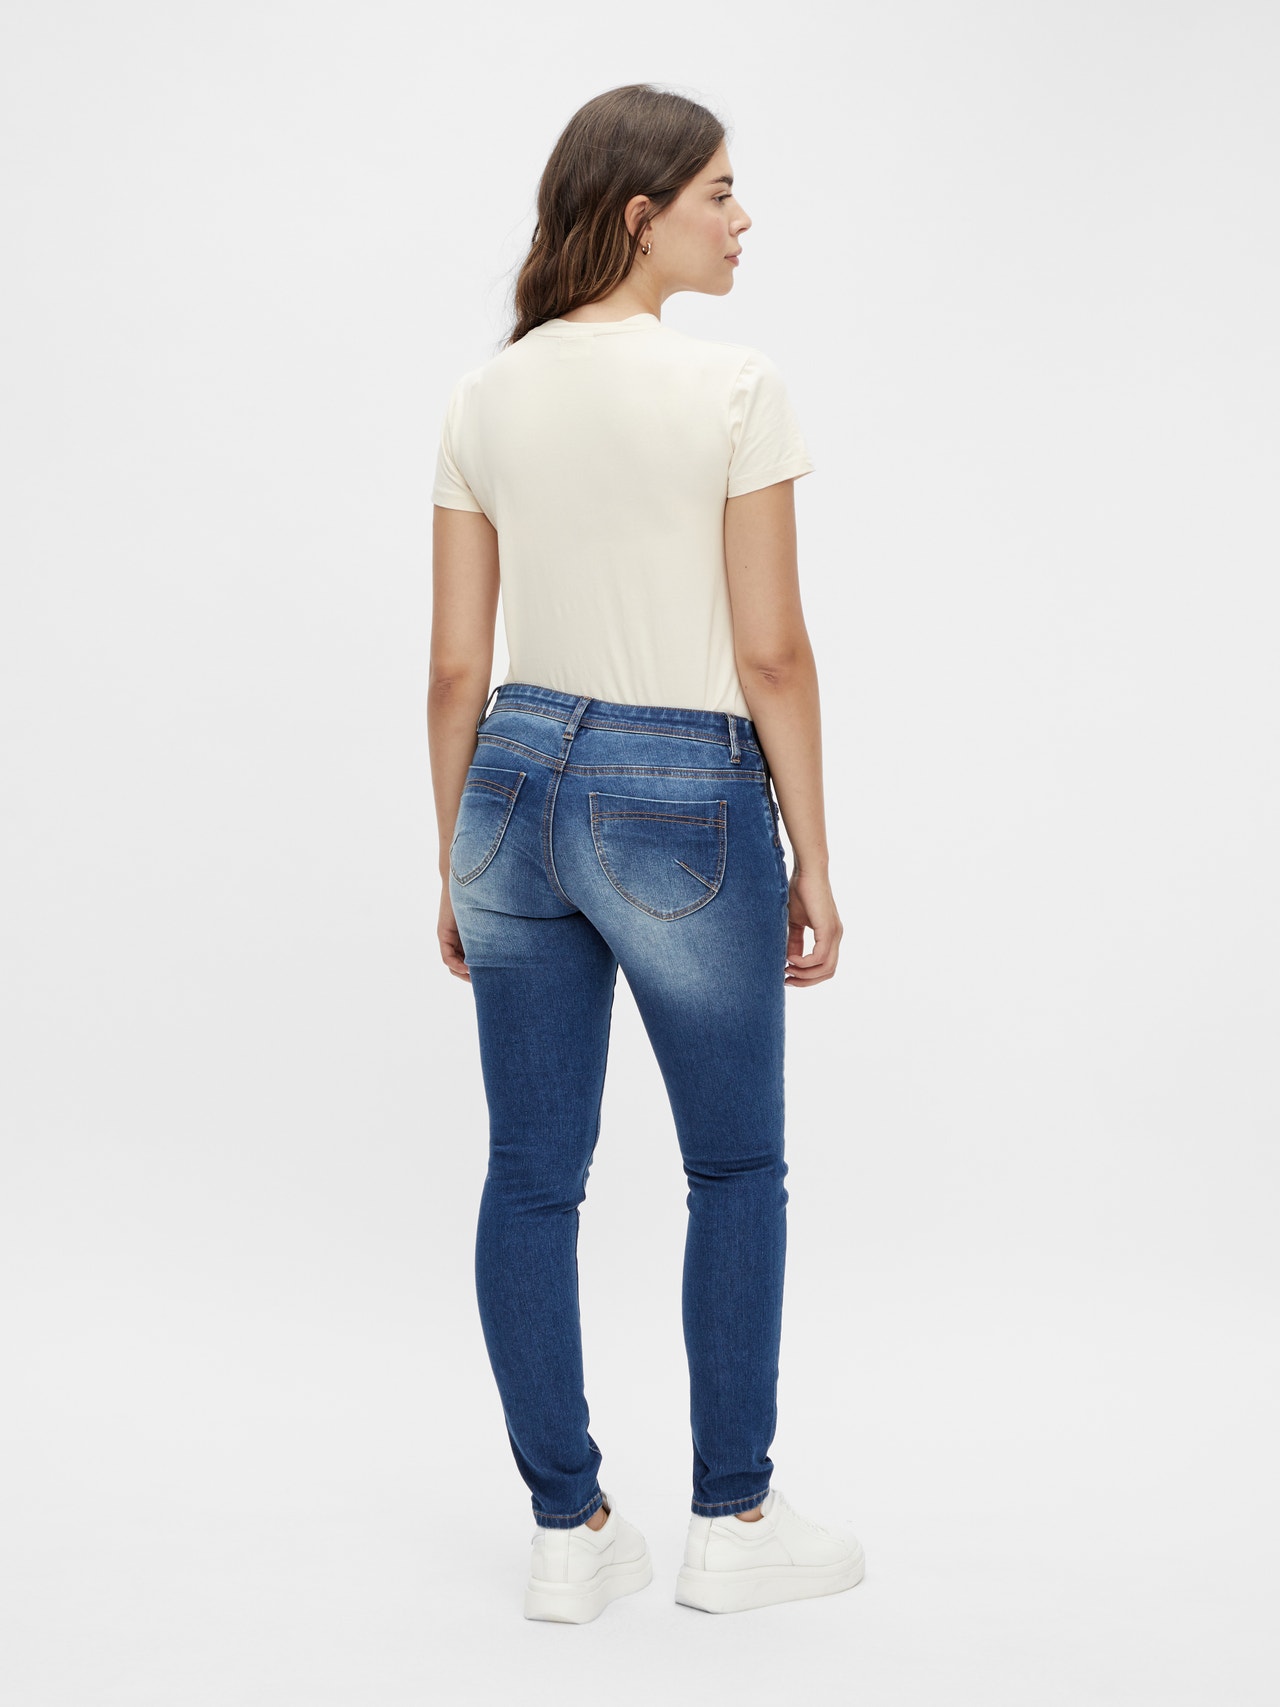 MAMA.LICIOUS Jeans Slim Fit -Medium Blue Denim - 20016422